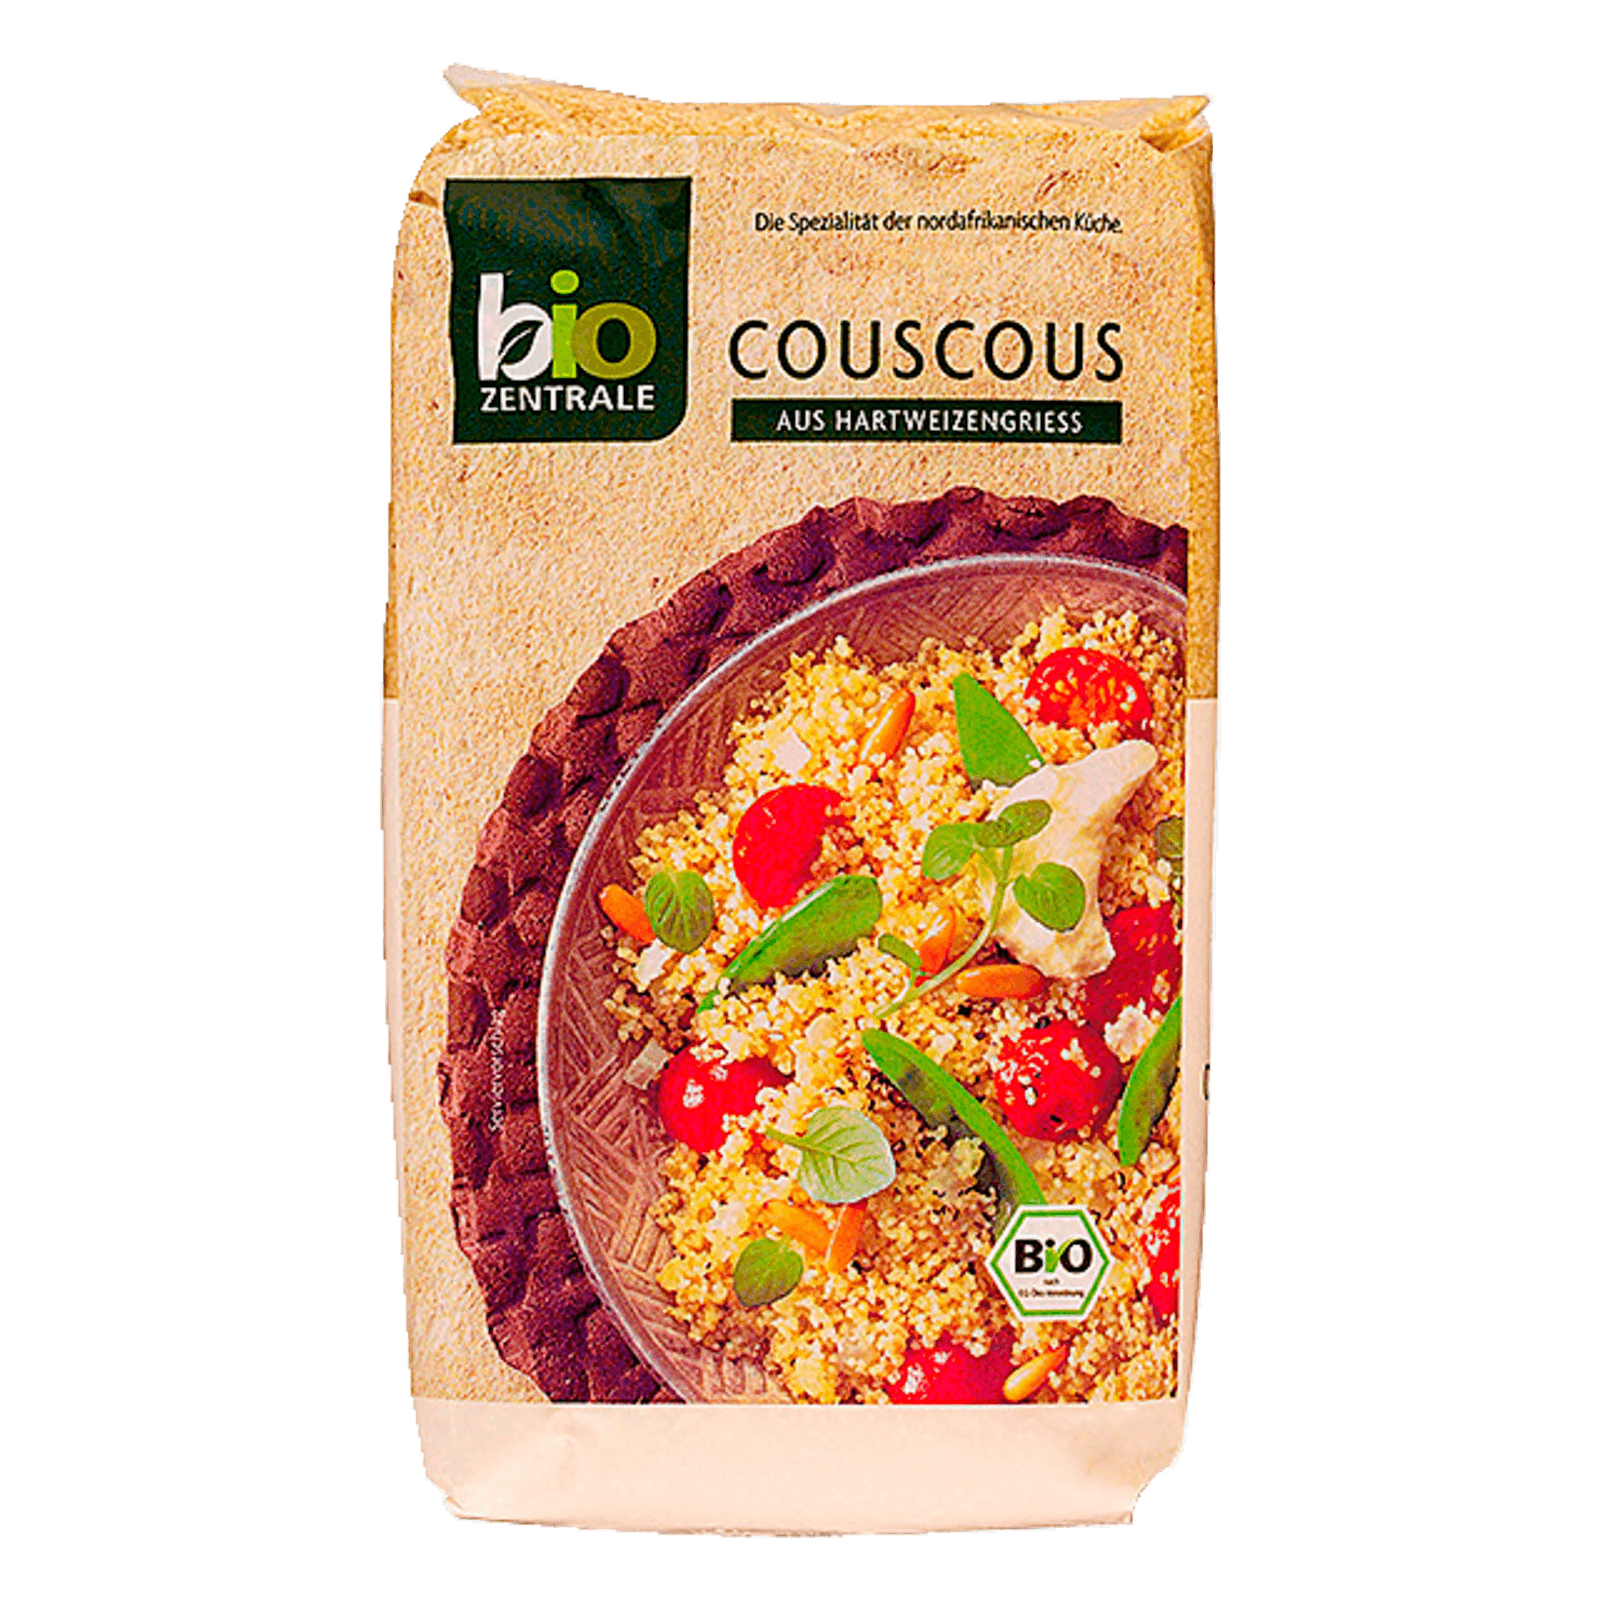 Biozentrale Bio Couscous 400g  für 2.69 EUR